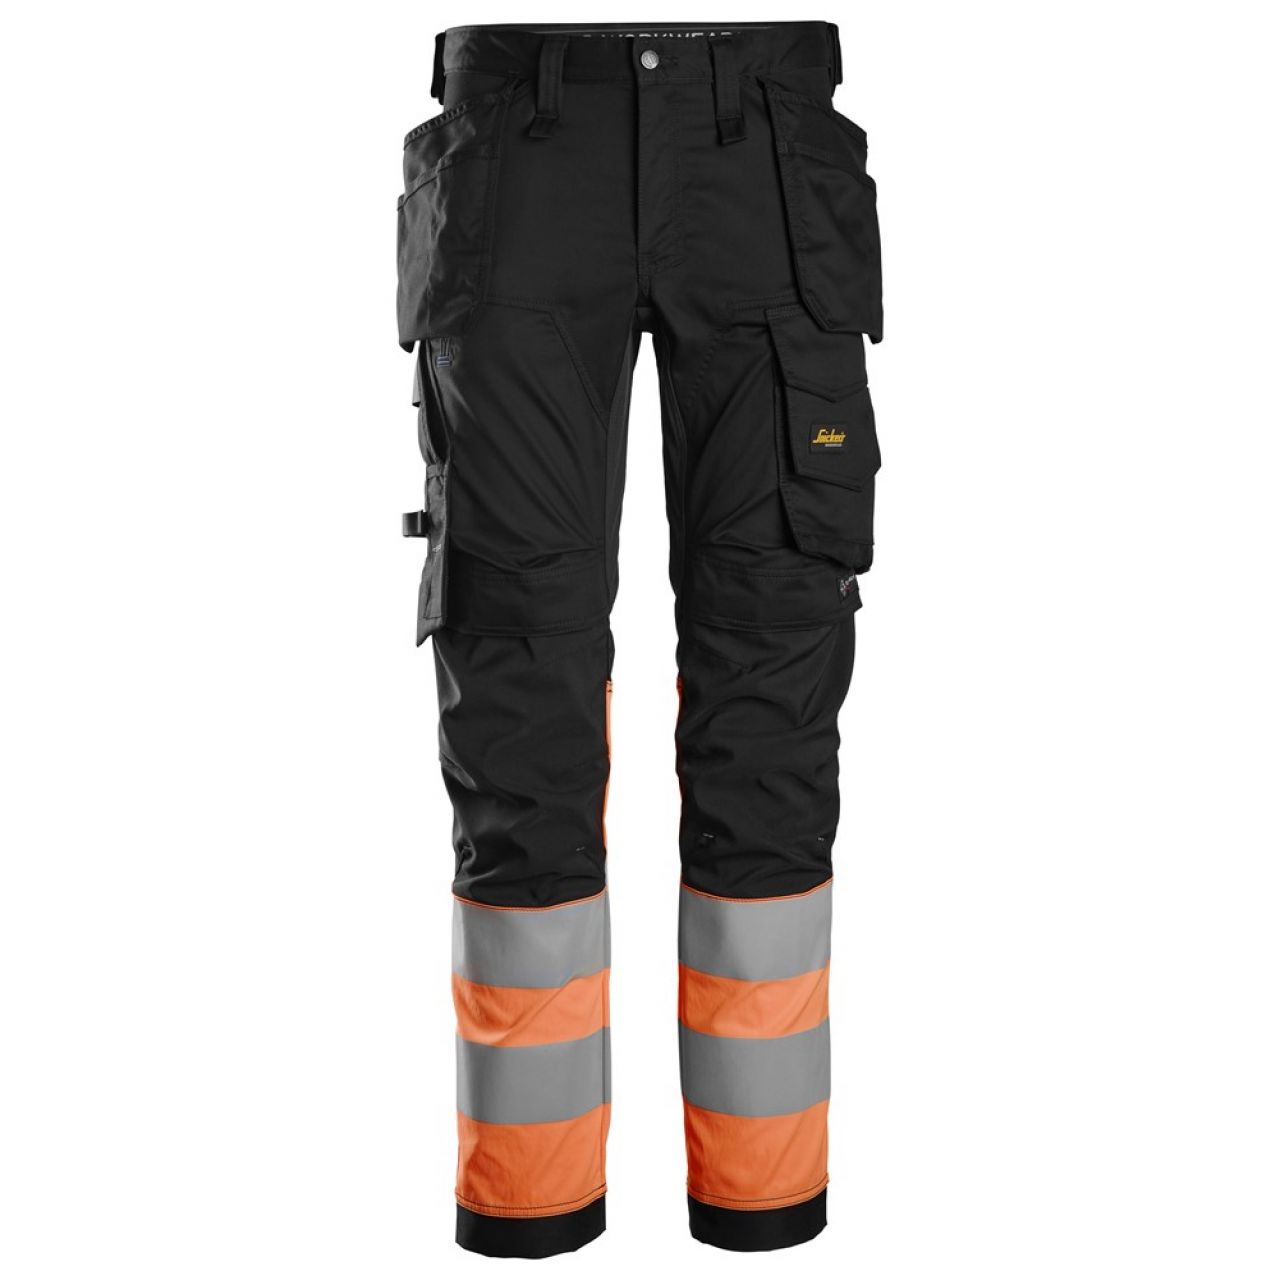 6234 Pantalones largos de trabajo elásticos de alta visibilidad clase 1 con bolsillos flotantes negro-naranja talla 252